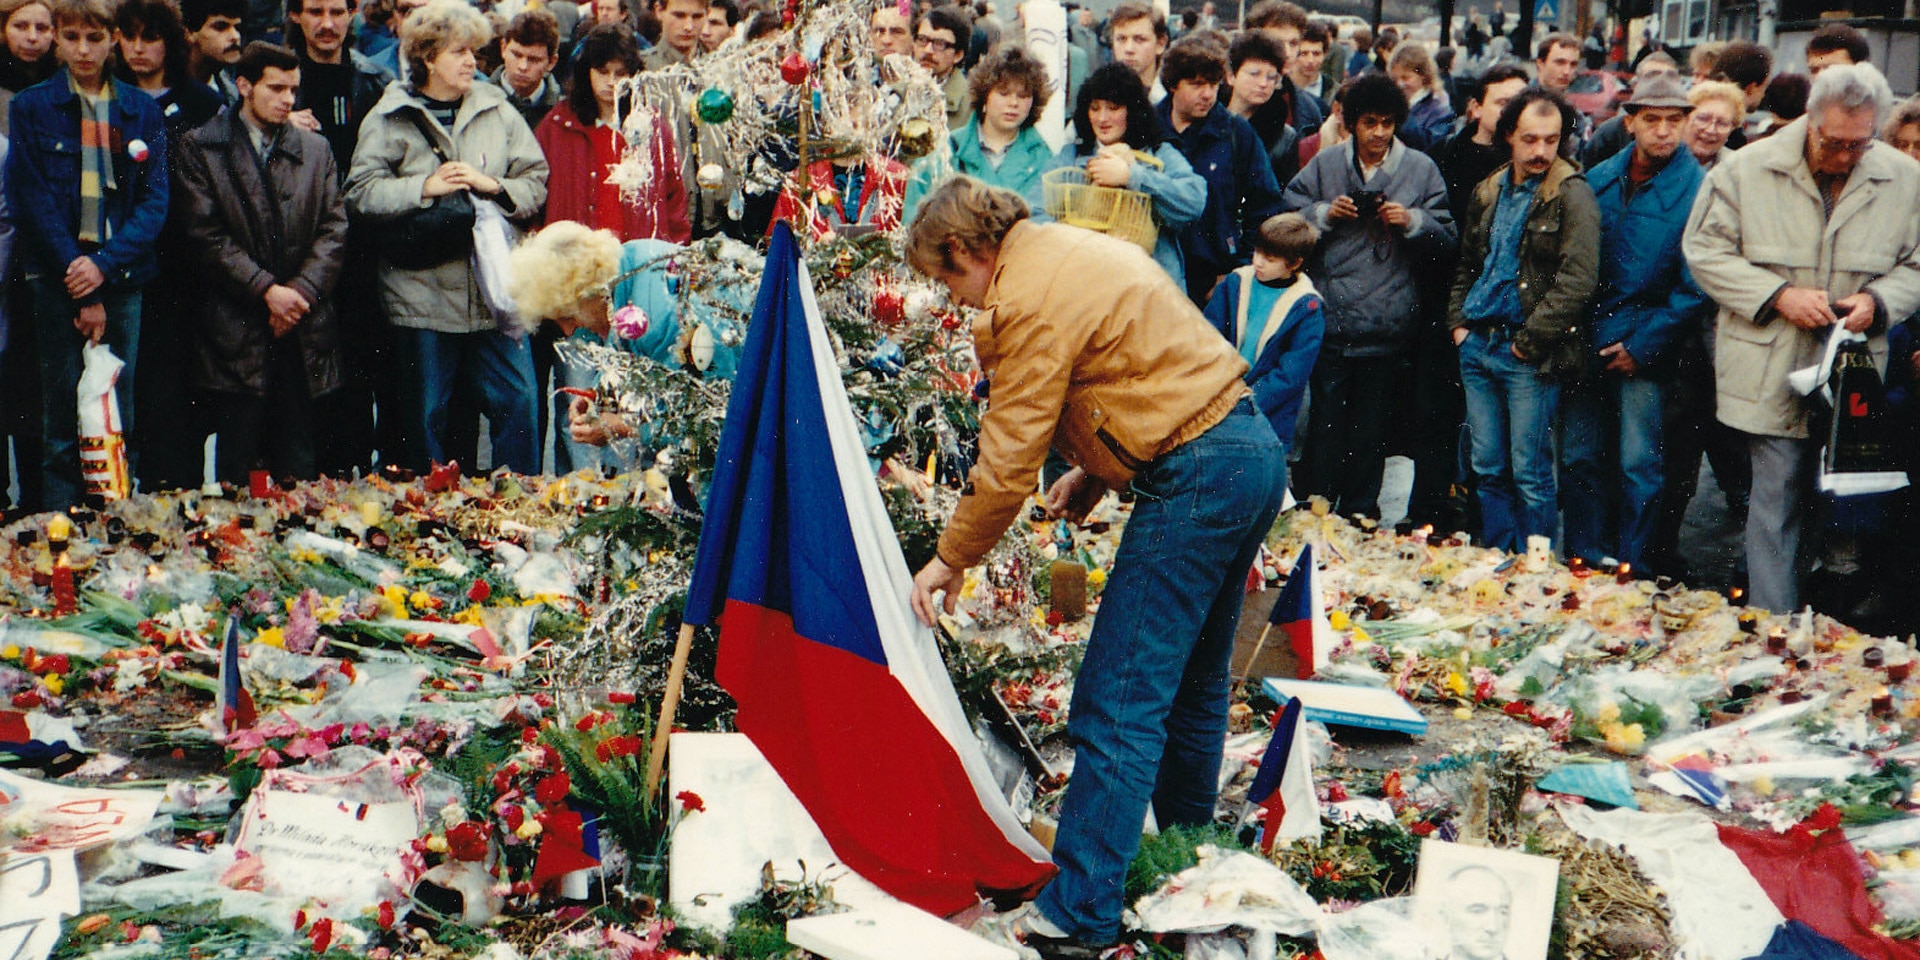 Entouré par une foule de spectateurs, Václav Havel dépose des fleurs sur la place Venceslas.